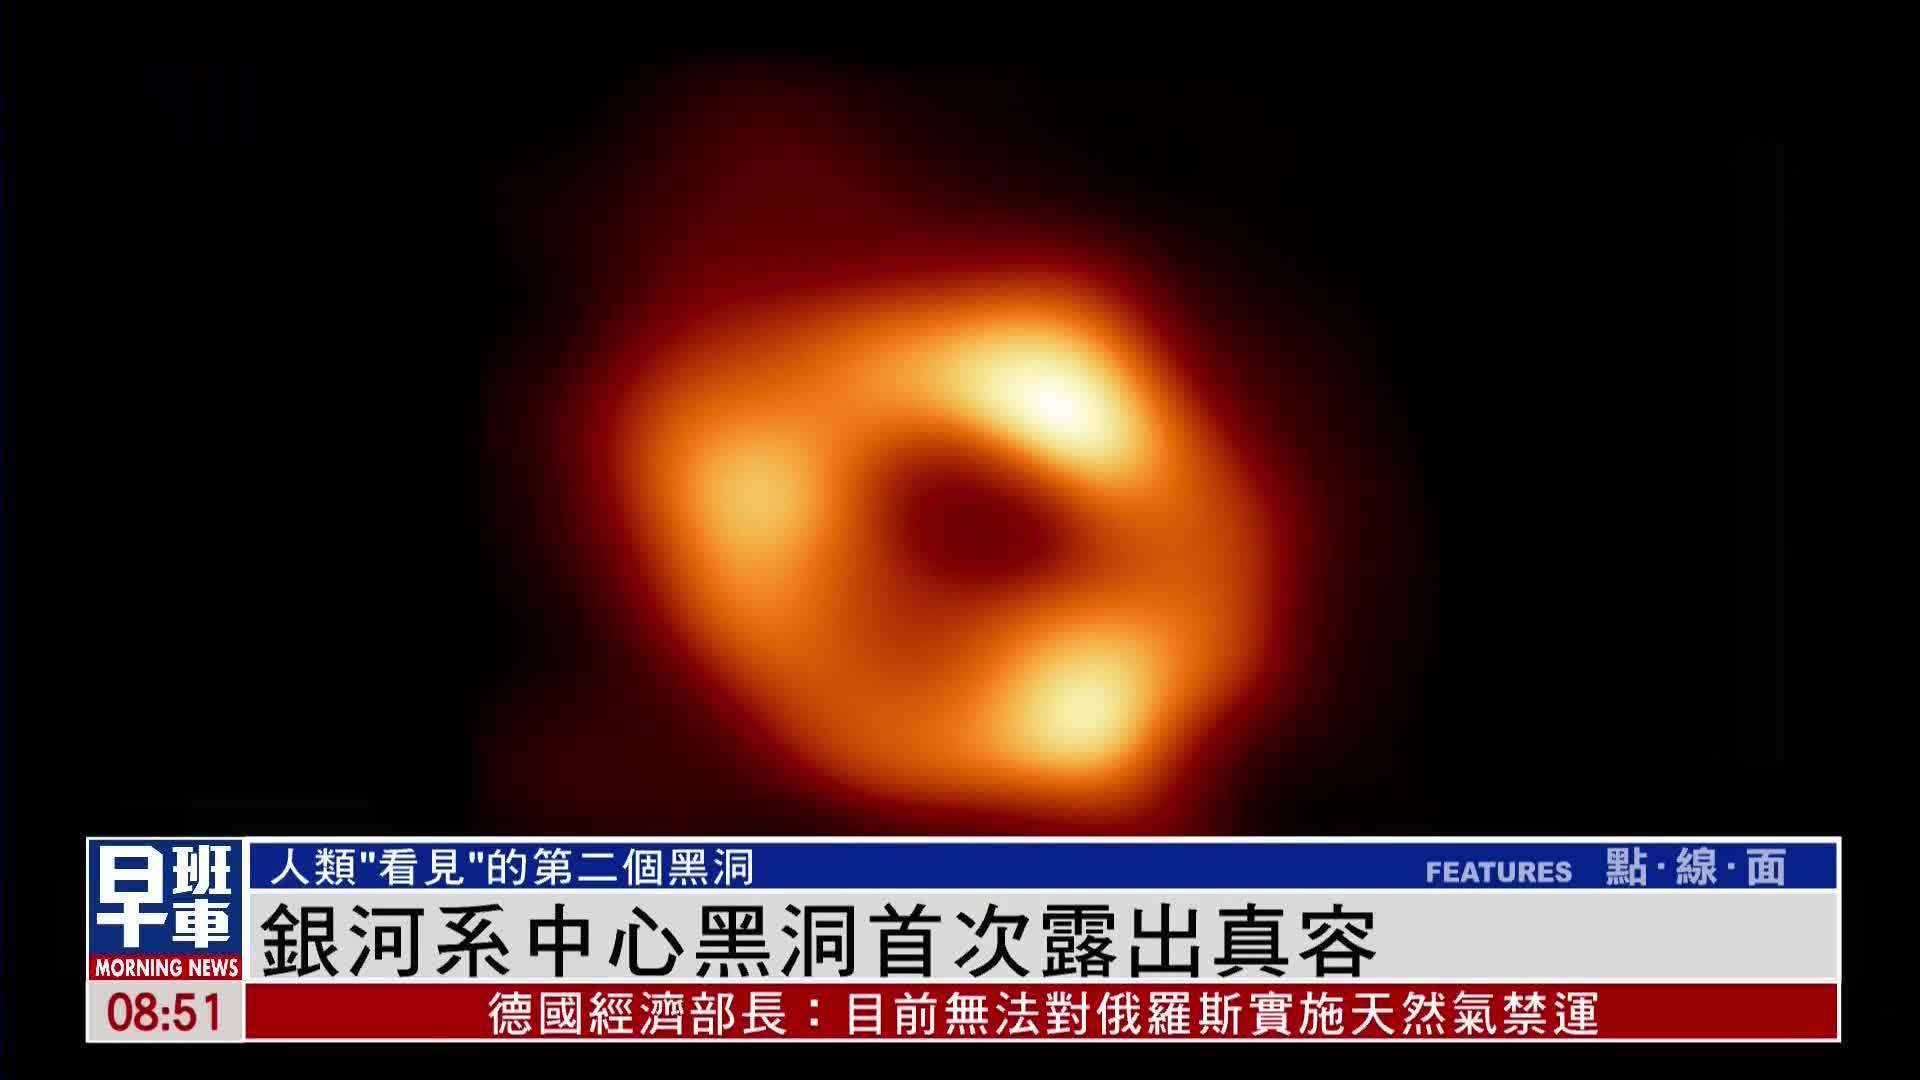 今天起，视界面望远镜将为黑洞拍下史上第一张“照片” - 知乎